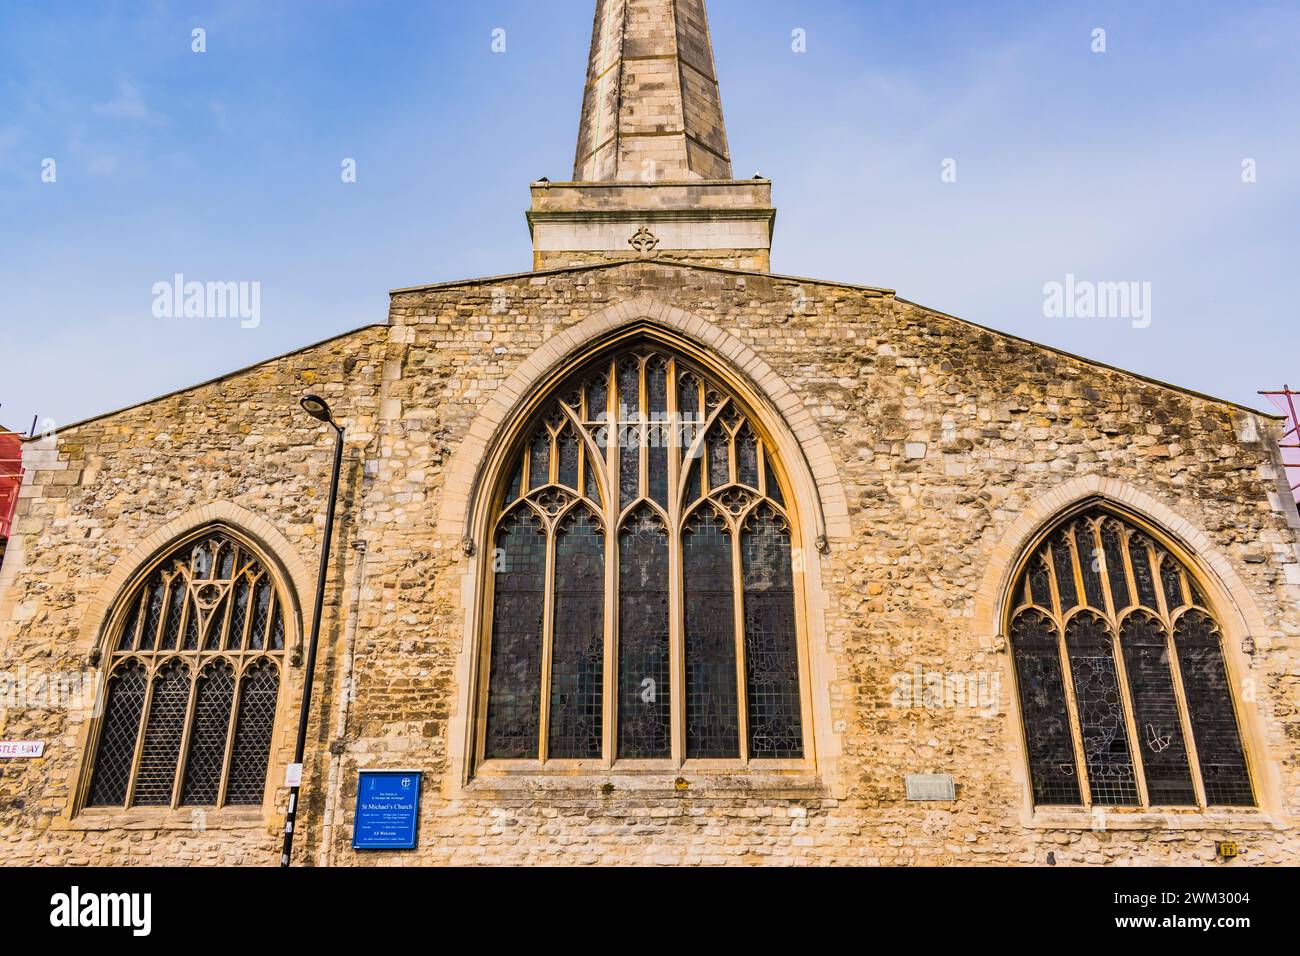 Prog Michael the Archange Church est le plus ancien bâtiment encore en usage dans la ville de Southampton, Hampshire, Angleterre, Royaume-Uni, Royaume-Uni, Royaume-Uni, Europe Banque D'Images